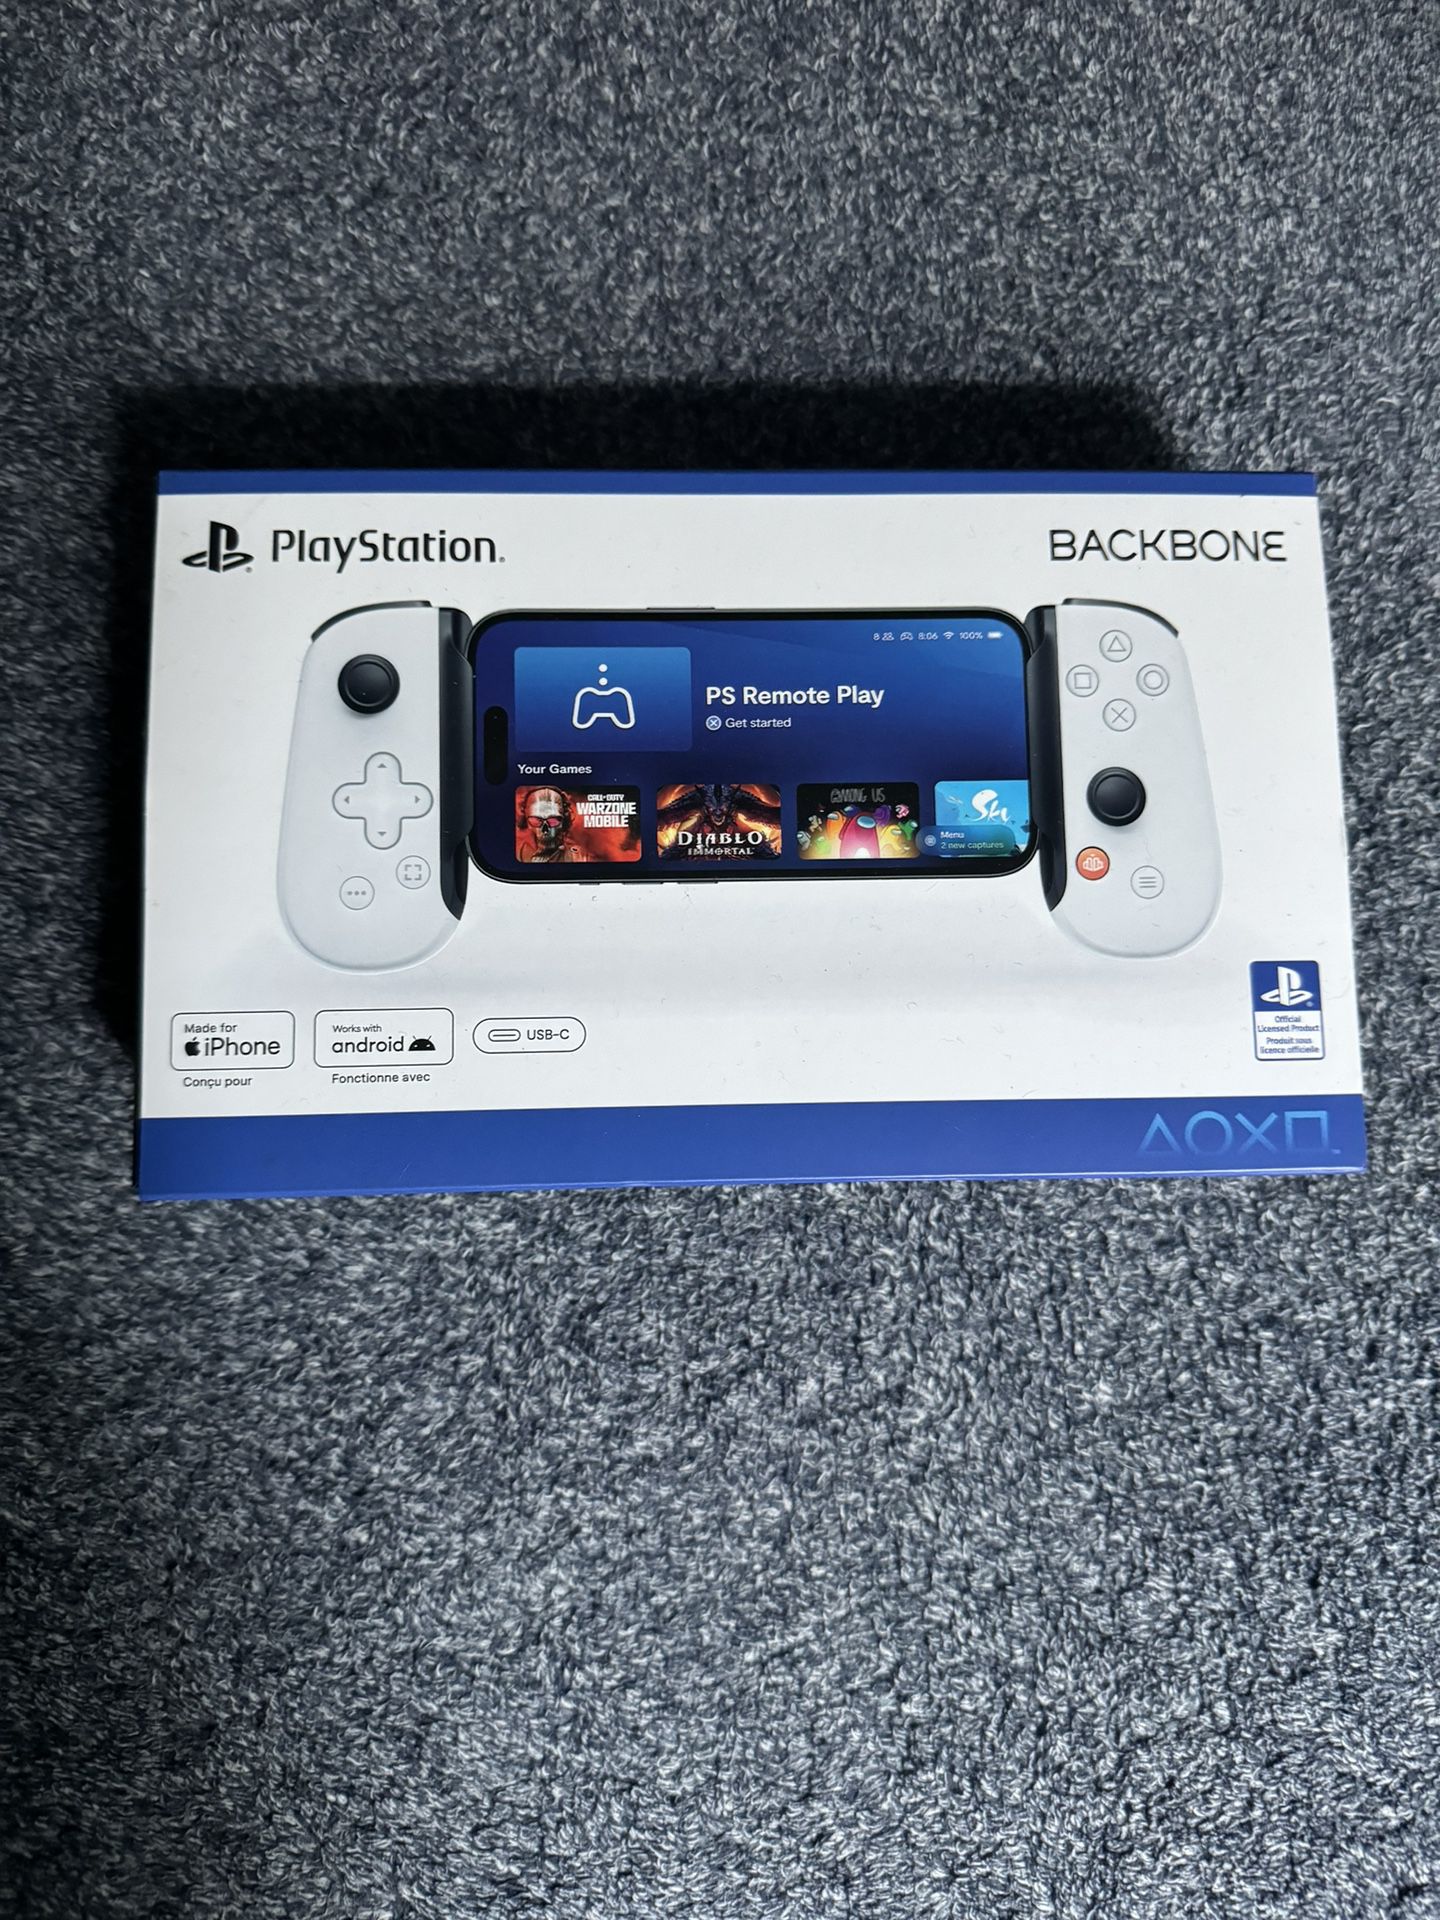 PlayStation BackBone